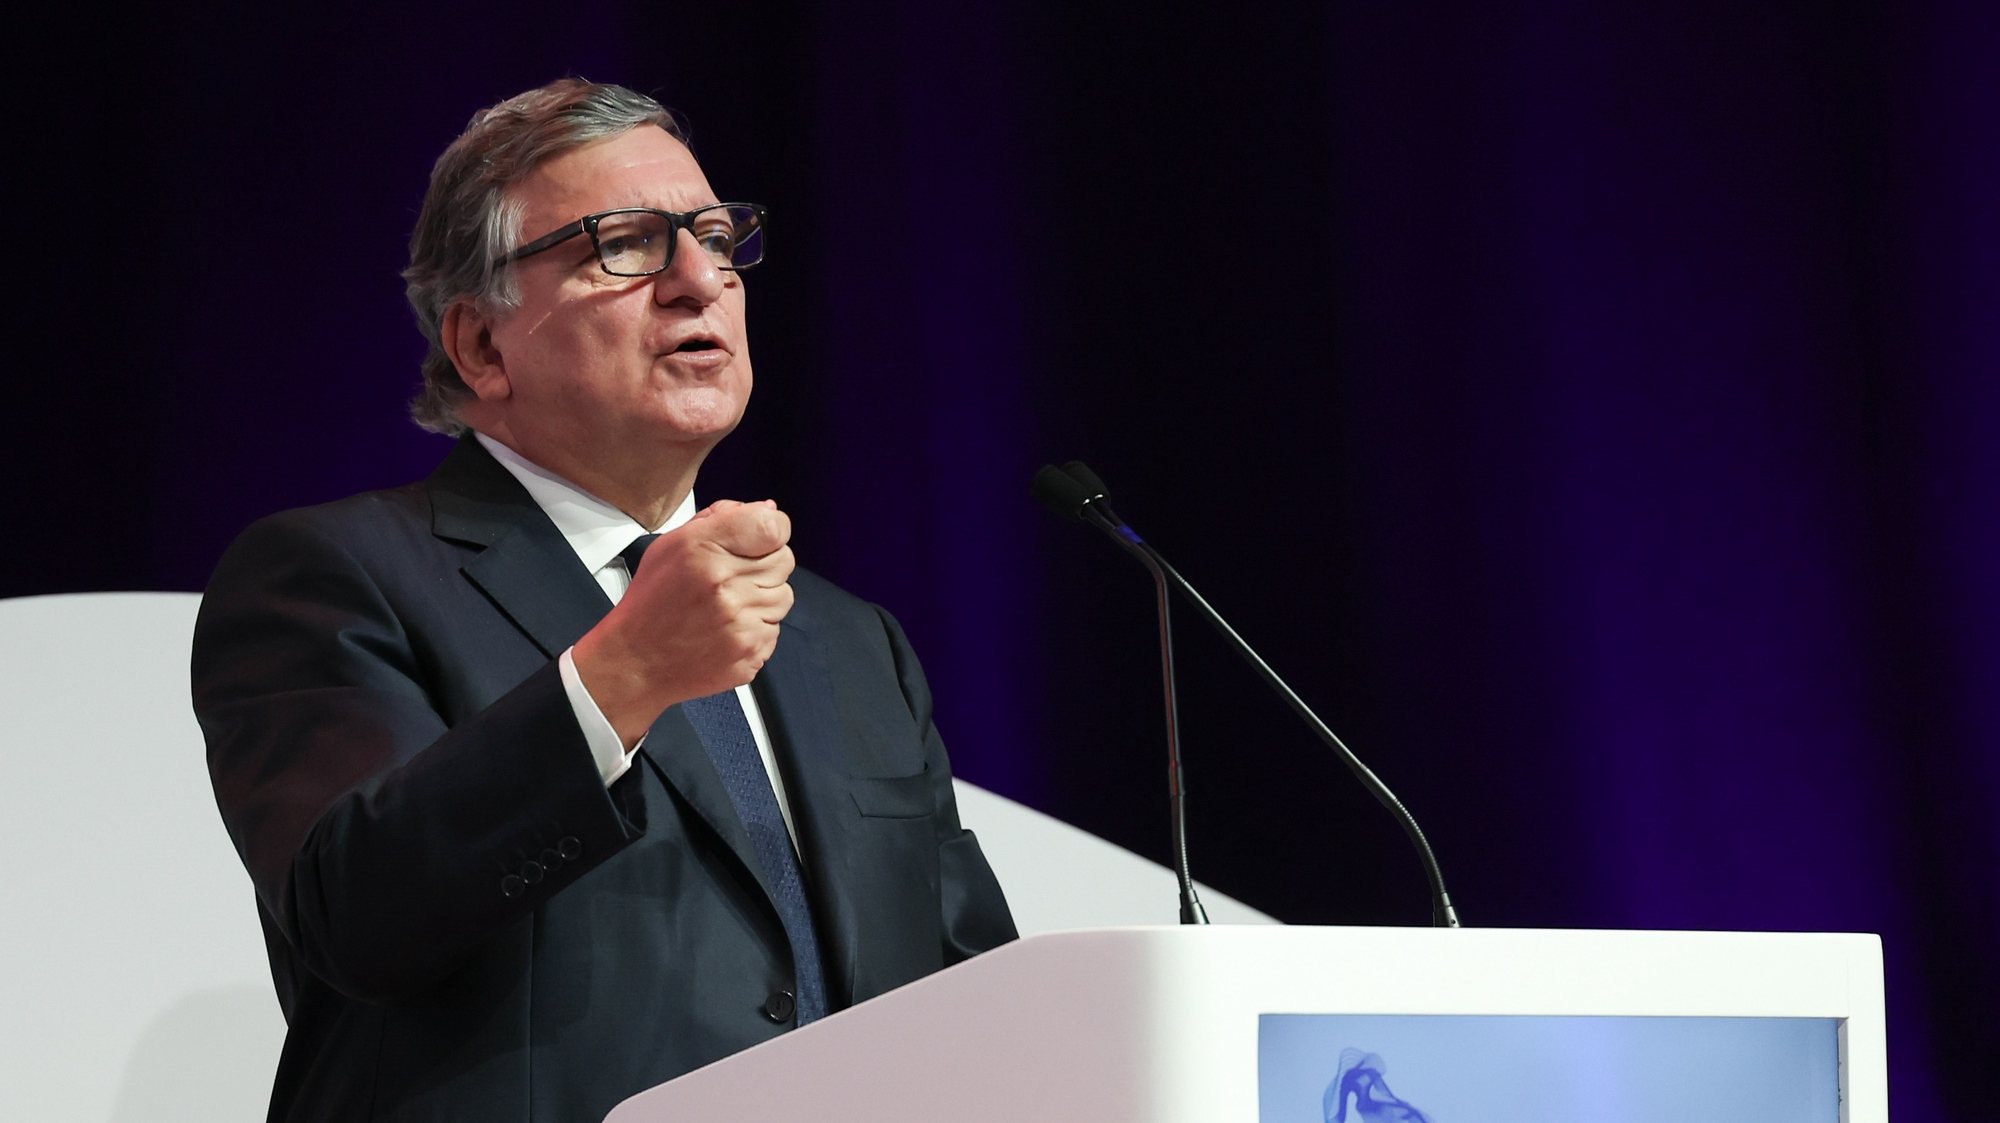 O antigo presidente da Comissão Europeia, ex- primeiro-ministro e atual presidente do Forum Euro Africa, José Manuel Durão Barroso, intervém durante a 7.ª edição do EurAfrican Forum que decorre em Cascais,15 de julho de 2024. ANTÓNIO COTRIM/LUSA